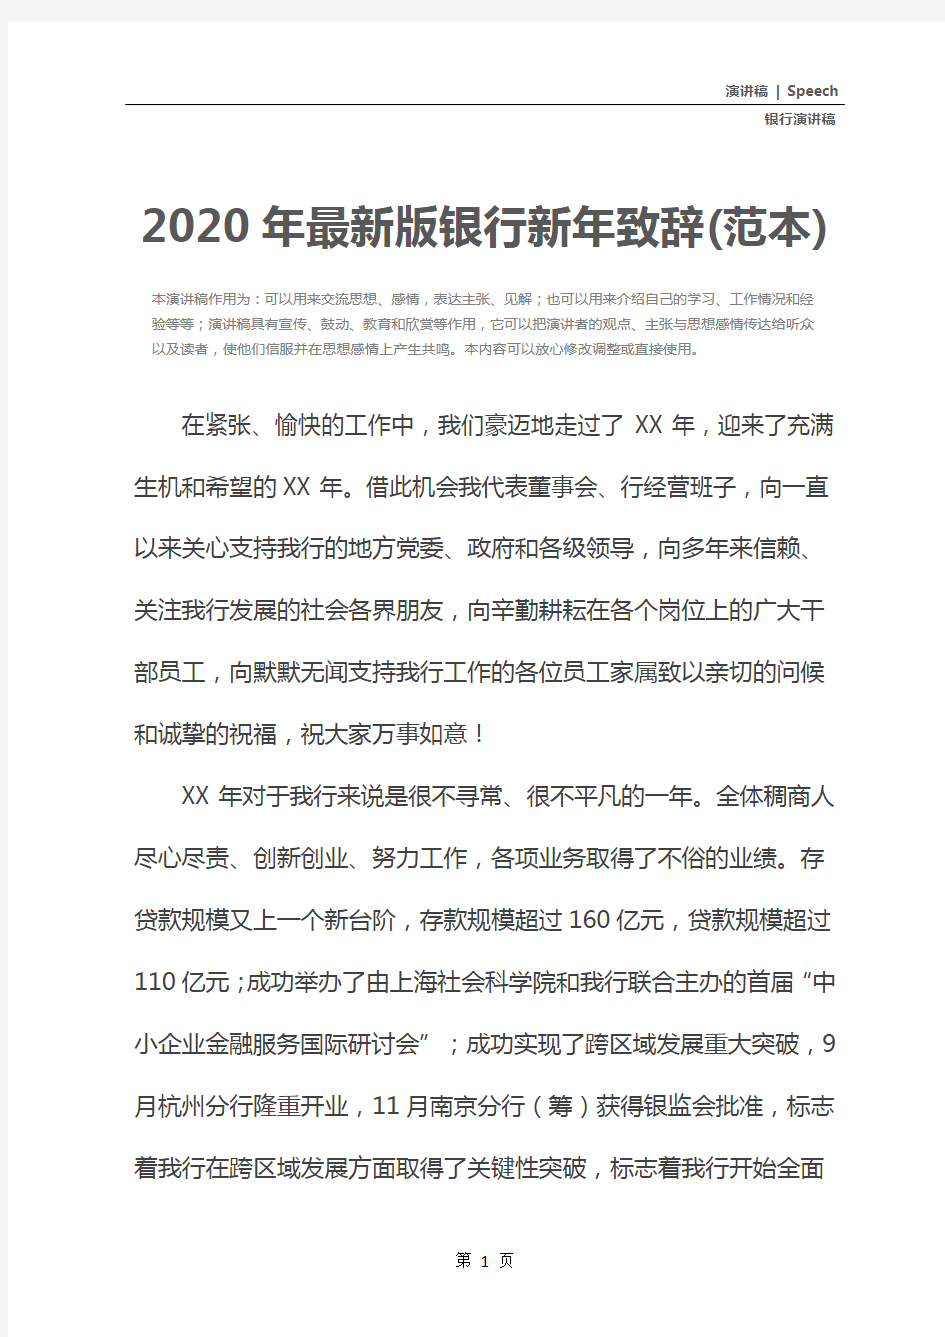 2020年最新版银行新年致辞(范本)